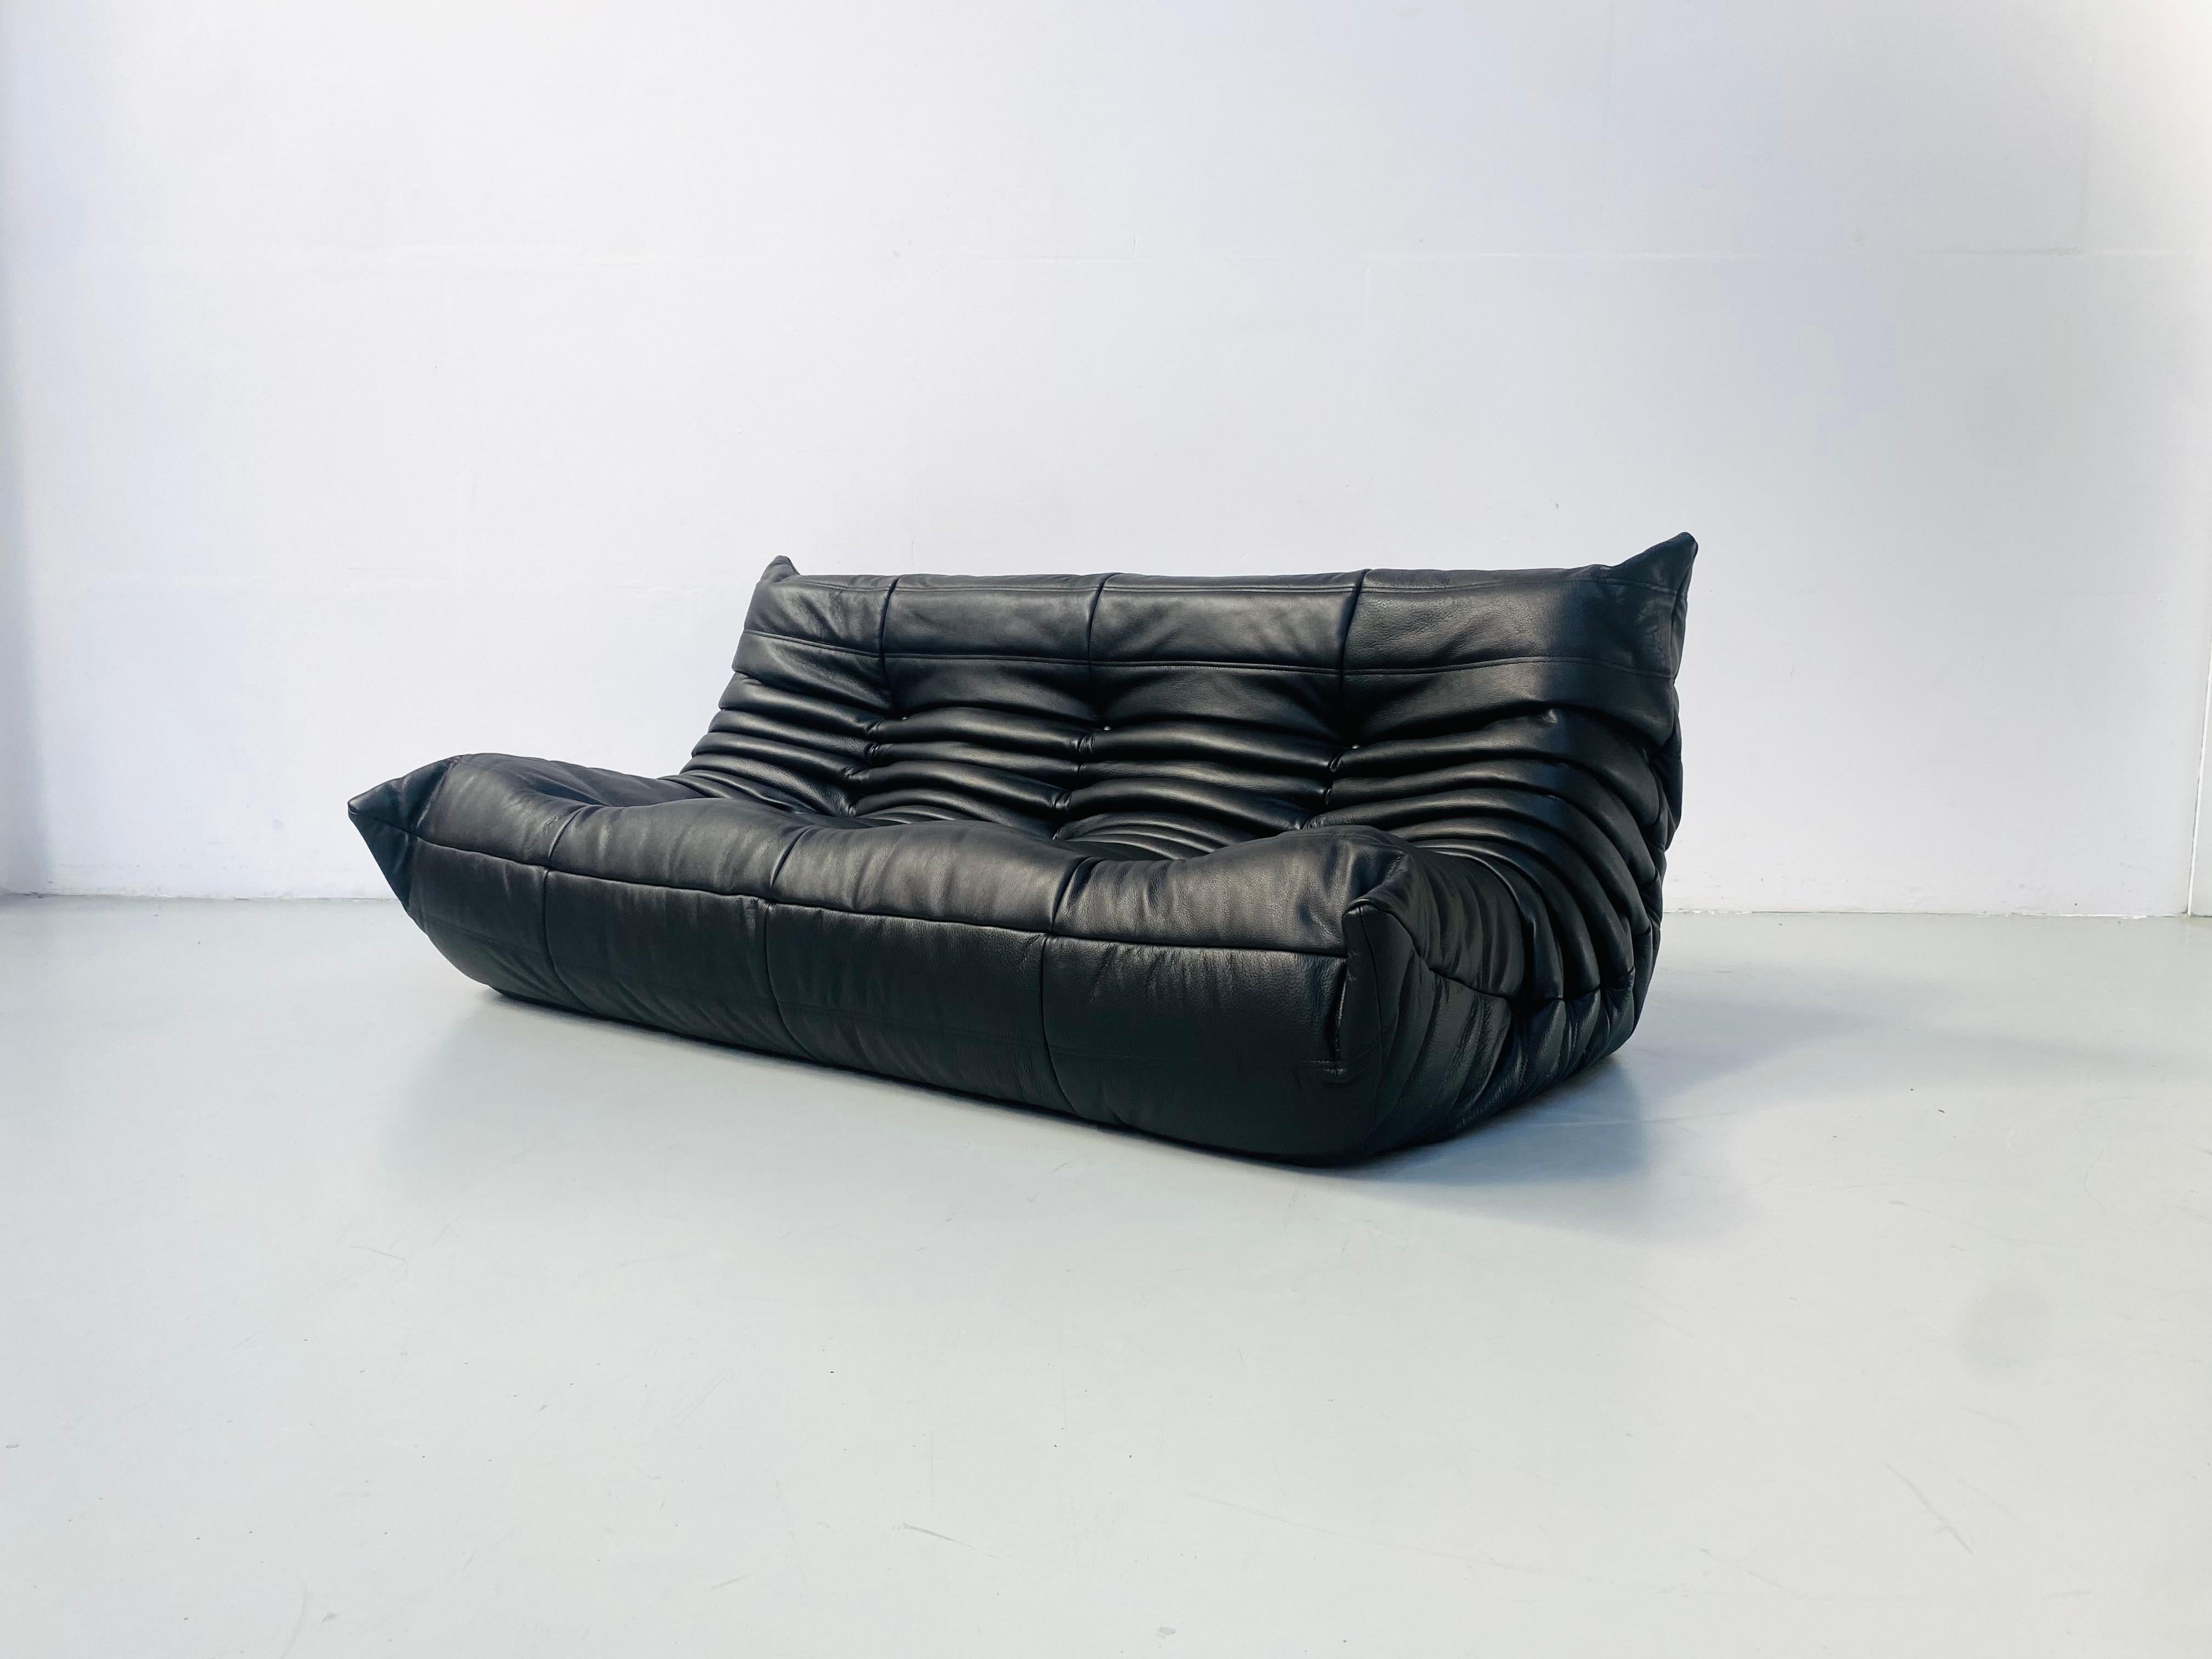 Der Togo wurde 1973 von Michel Ducaroy für Ligne Roset entworfen. Es ist das erste Sofa/Sessel, das nur aus Schaumstoff und Leder besteht. Die Togo-Kollektion zeichnet sich durch ein ergonomisches Design mit Polyätherschaum-Konstruktion und